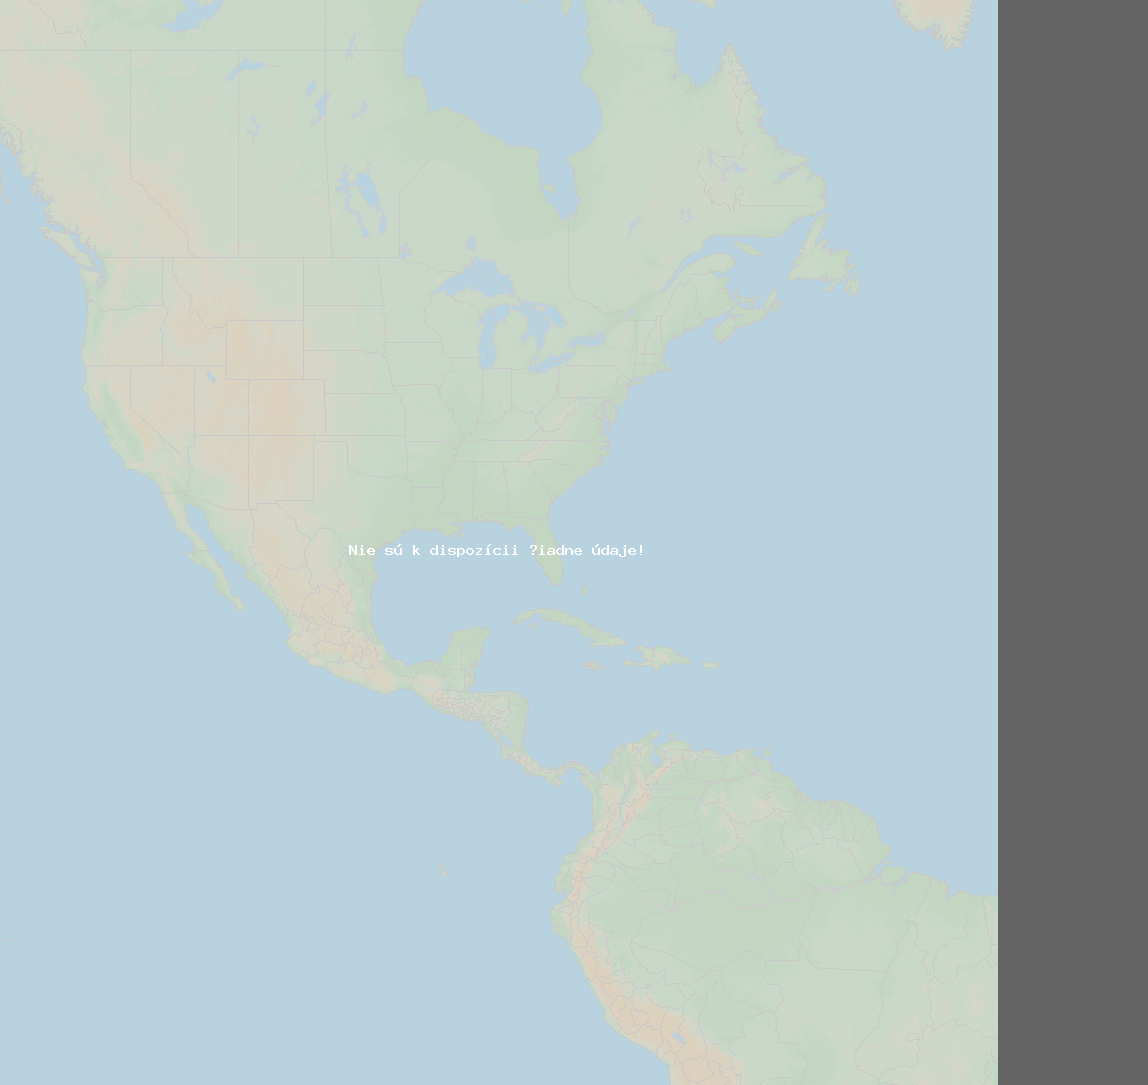 Pomer bleskov (Stanica Baie-Comeau QC) North America 2019 November